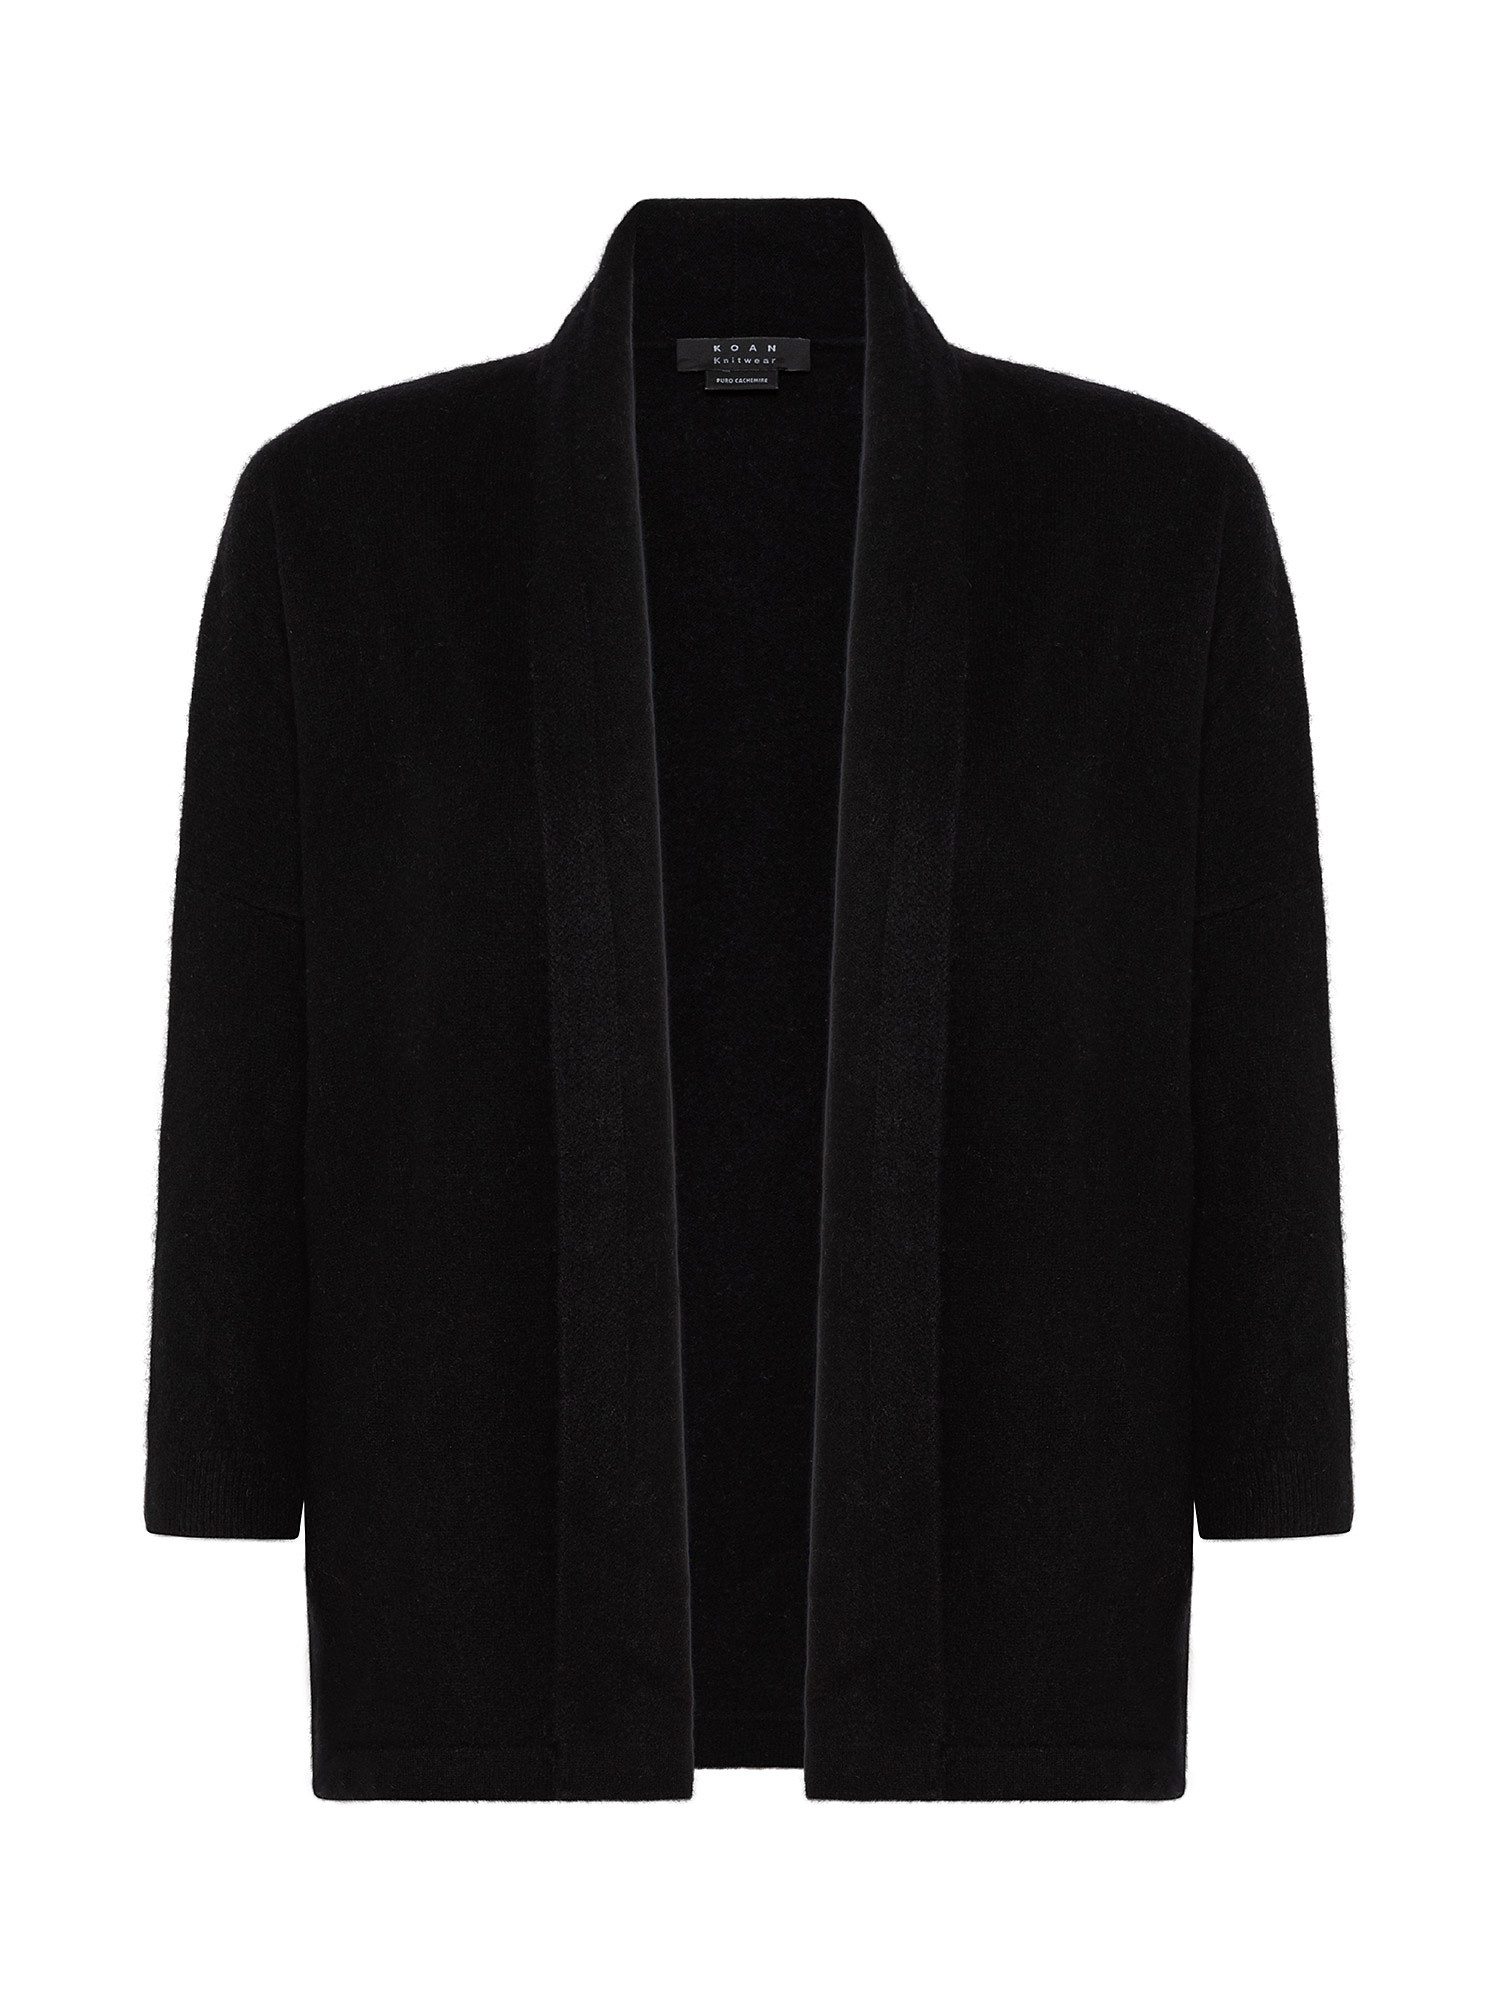 Cashmere cardigan, Black, large image number 0